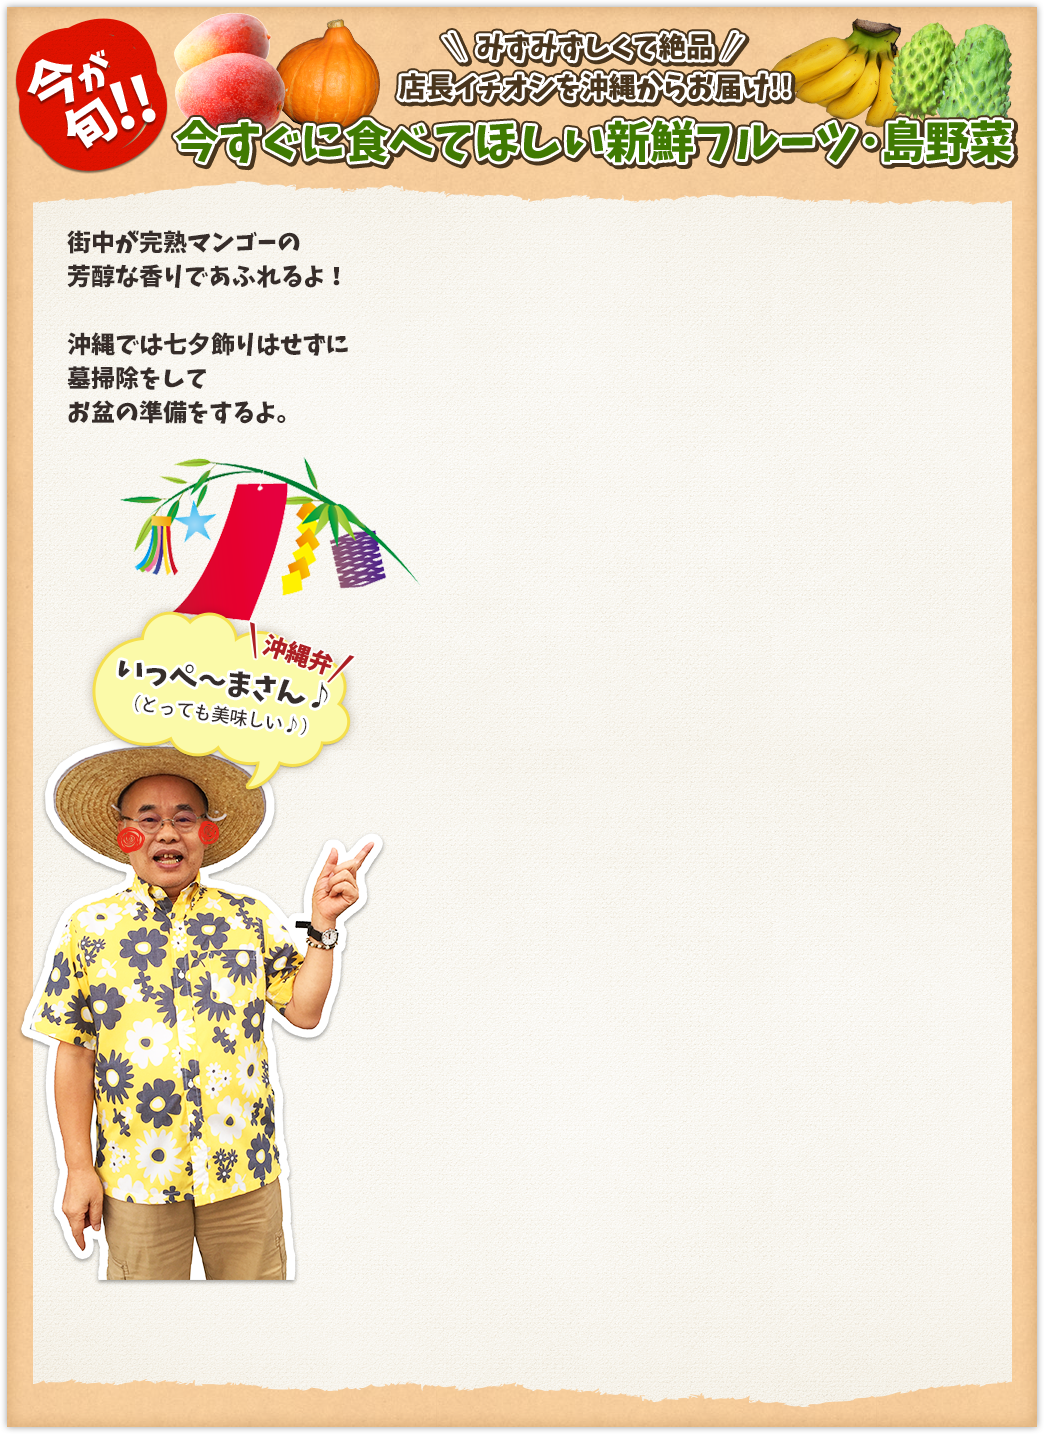 今が旬!! みずみずしく絶品 店長イチオシを沖縄からお届け!! 今すぐに食べてほしい新鮮フルーツ・島野菜